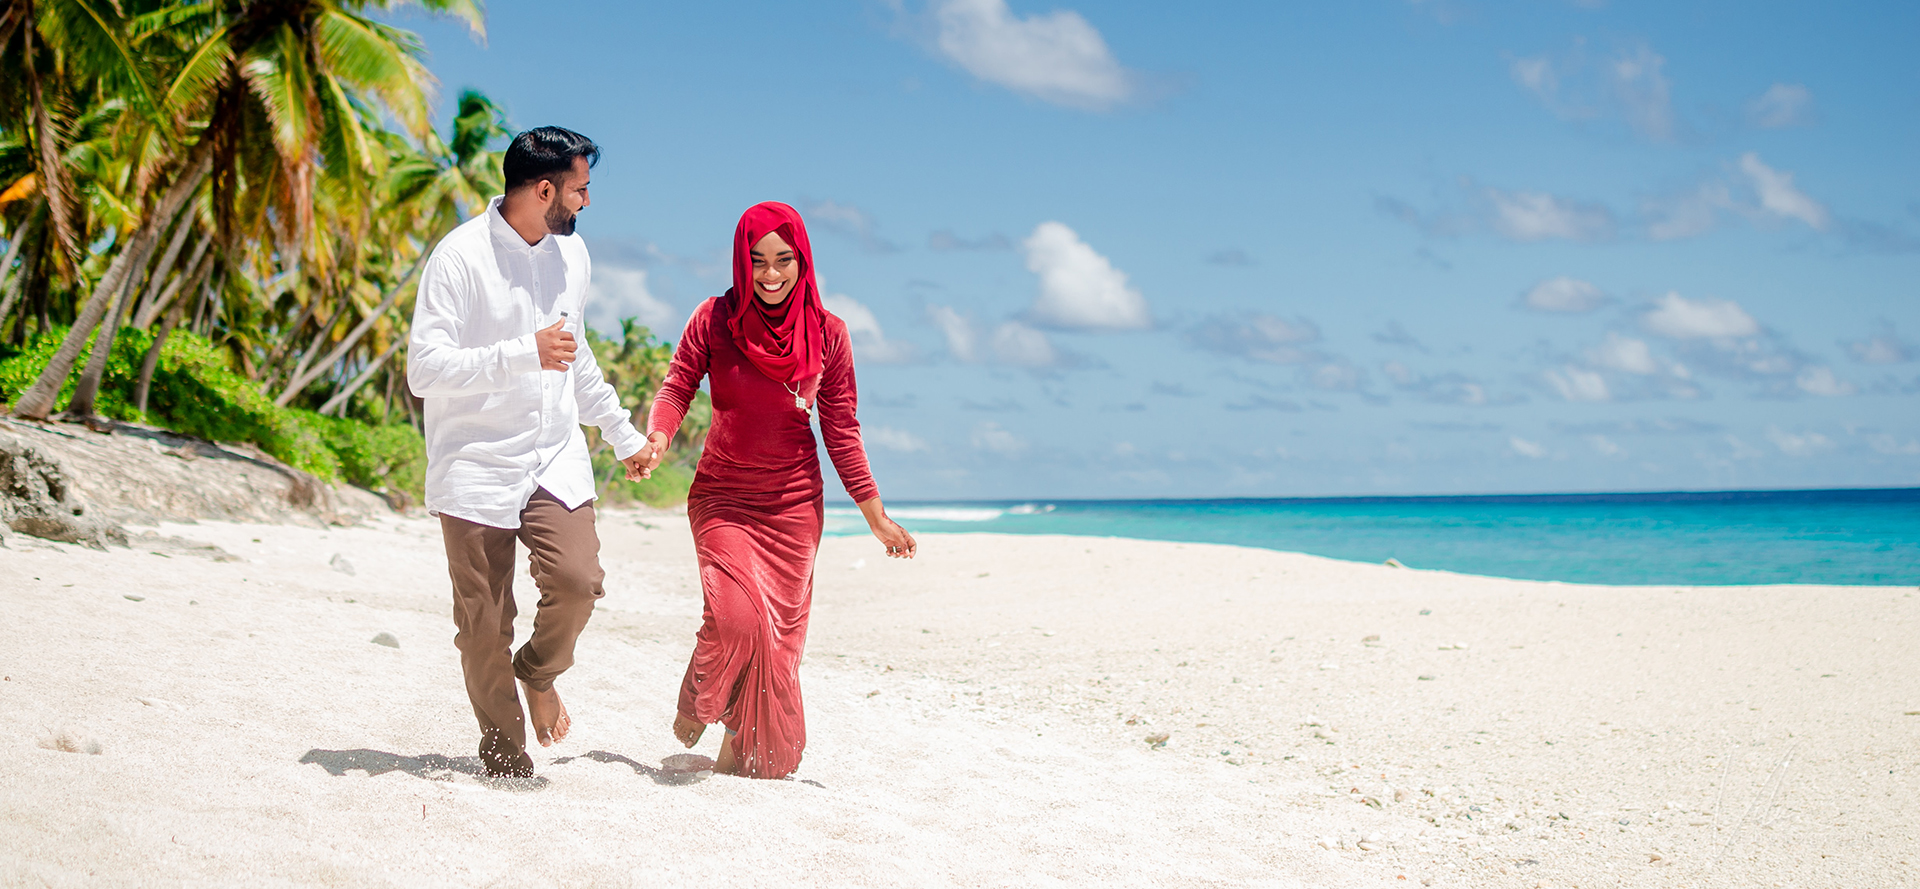 Célibataires arabes en rendez-vous se promenant le long de la plage.